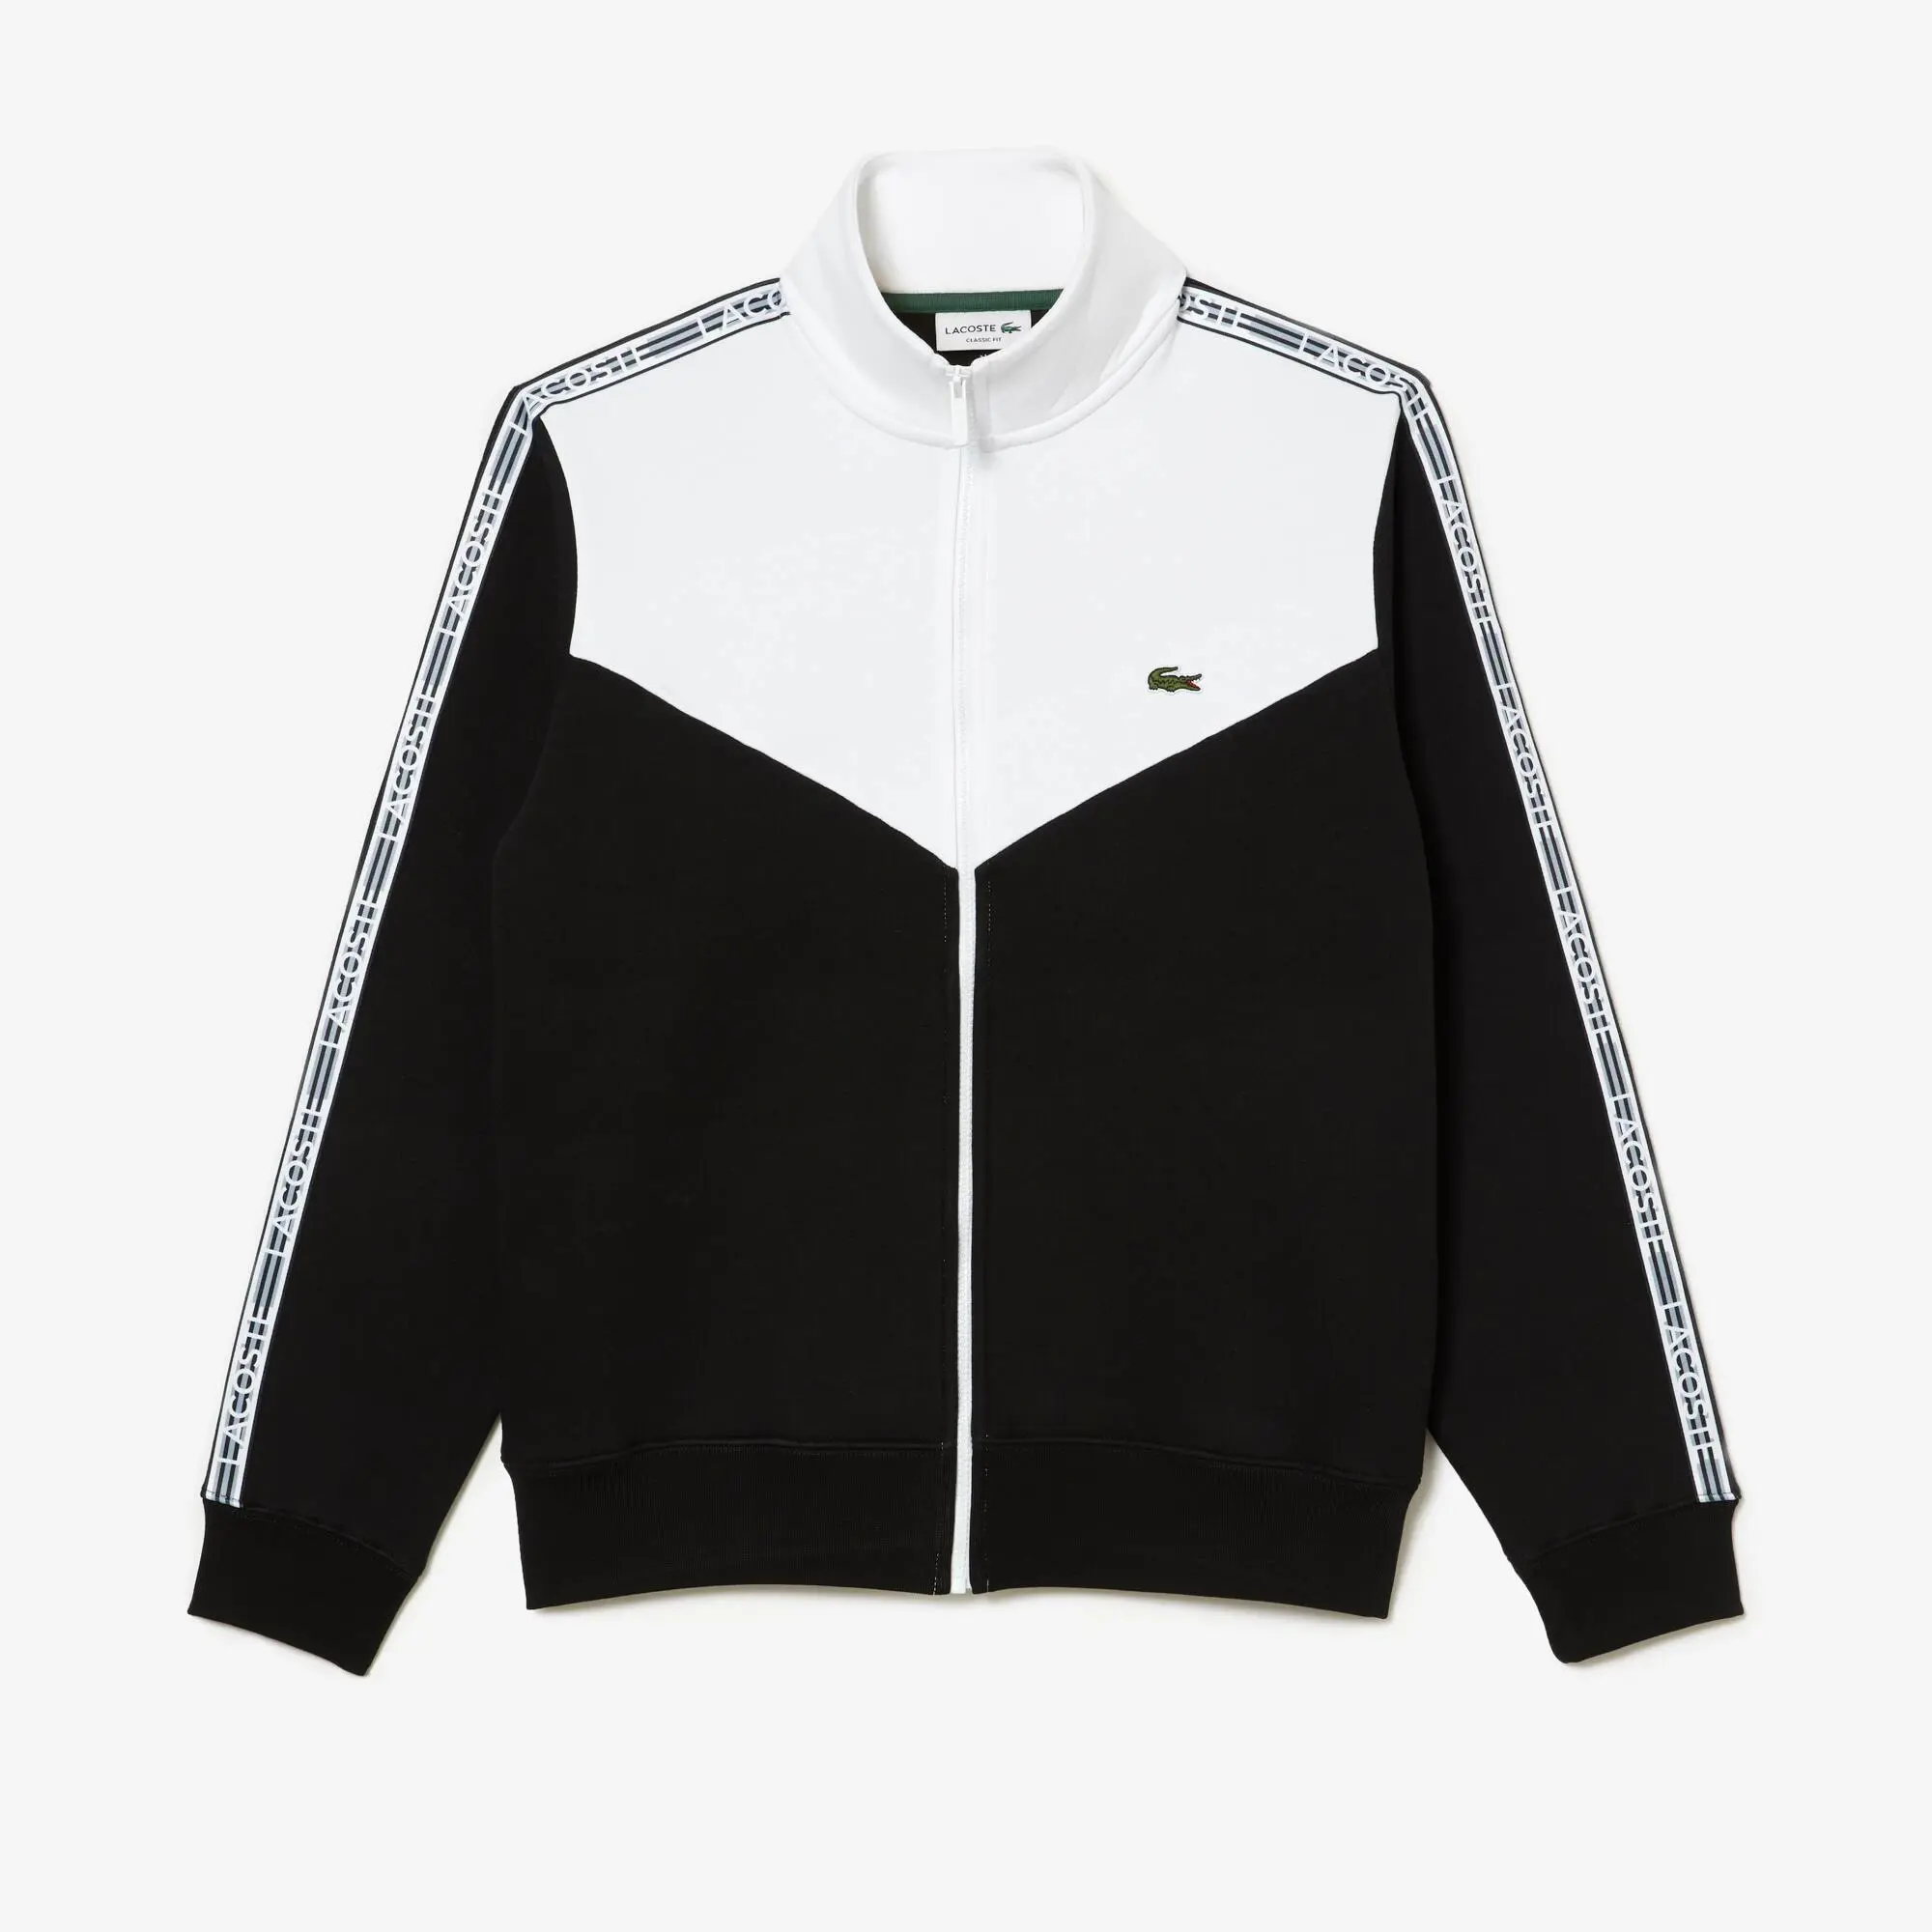 Lacoste Men’s Lacoste Classic Fit Colourblock Zipped Jogger Sweatshirt. 2